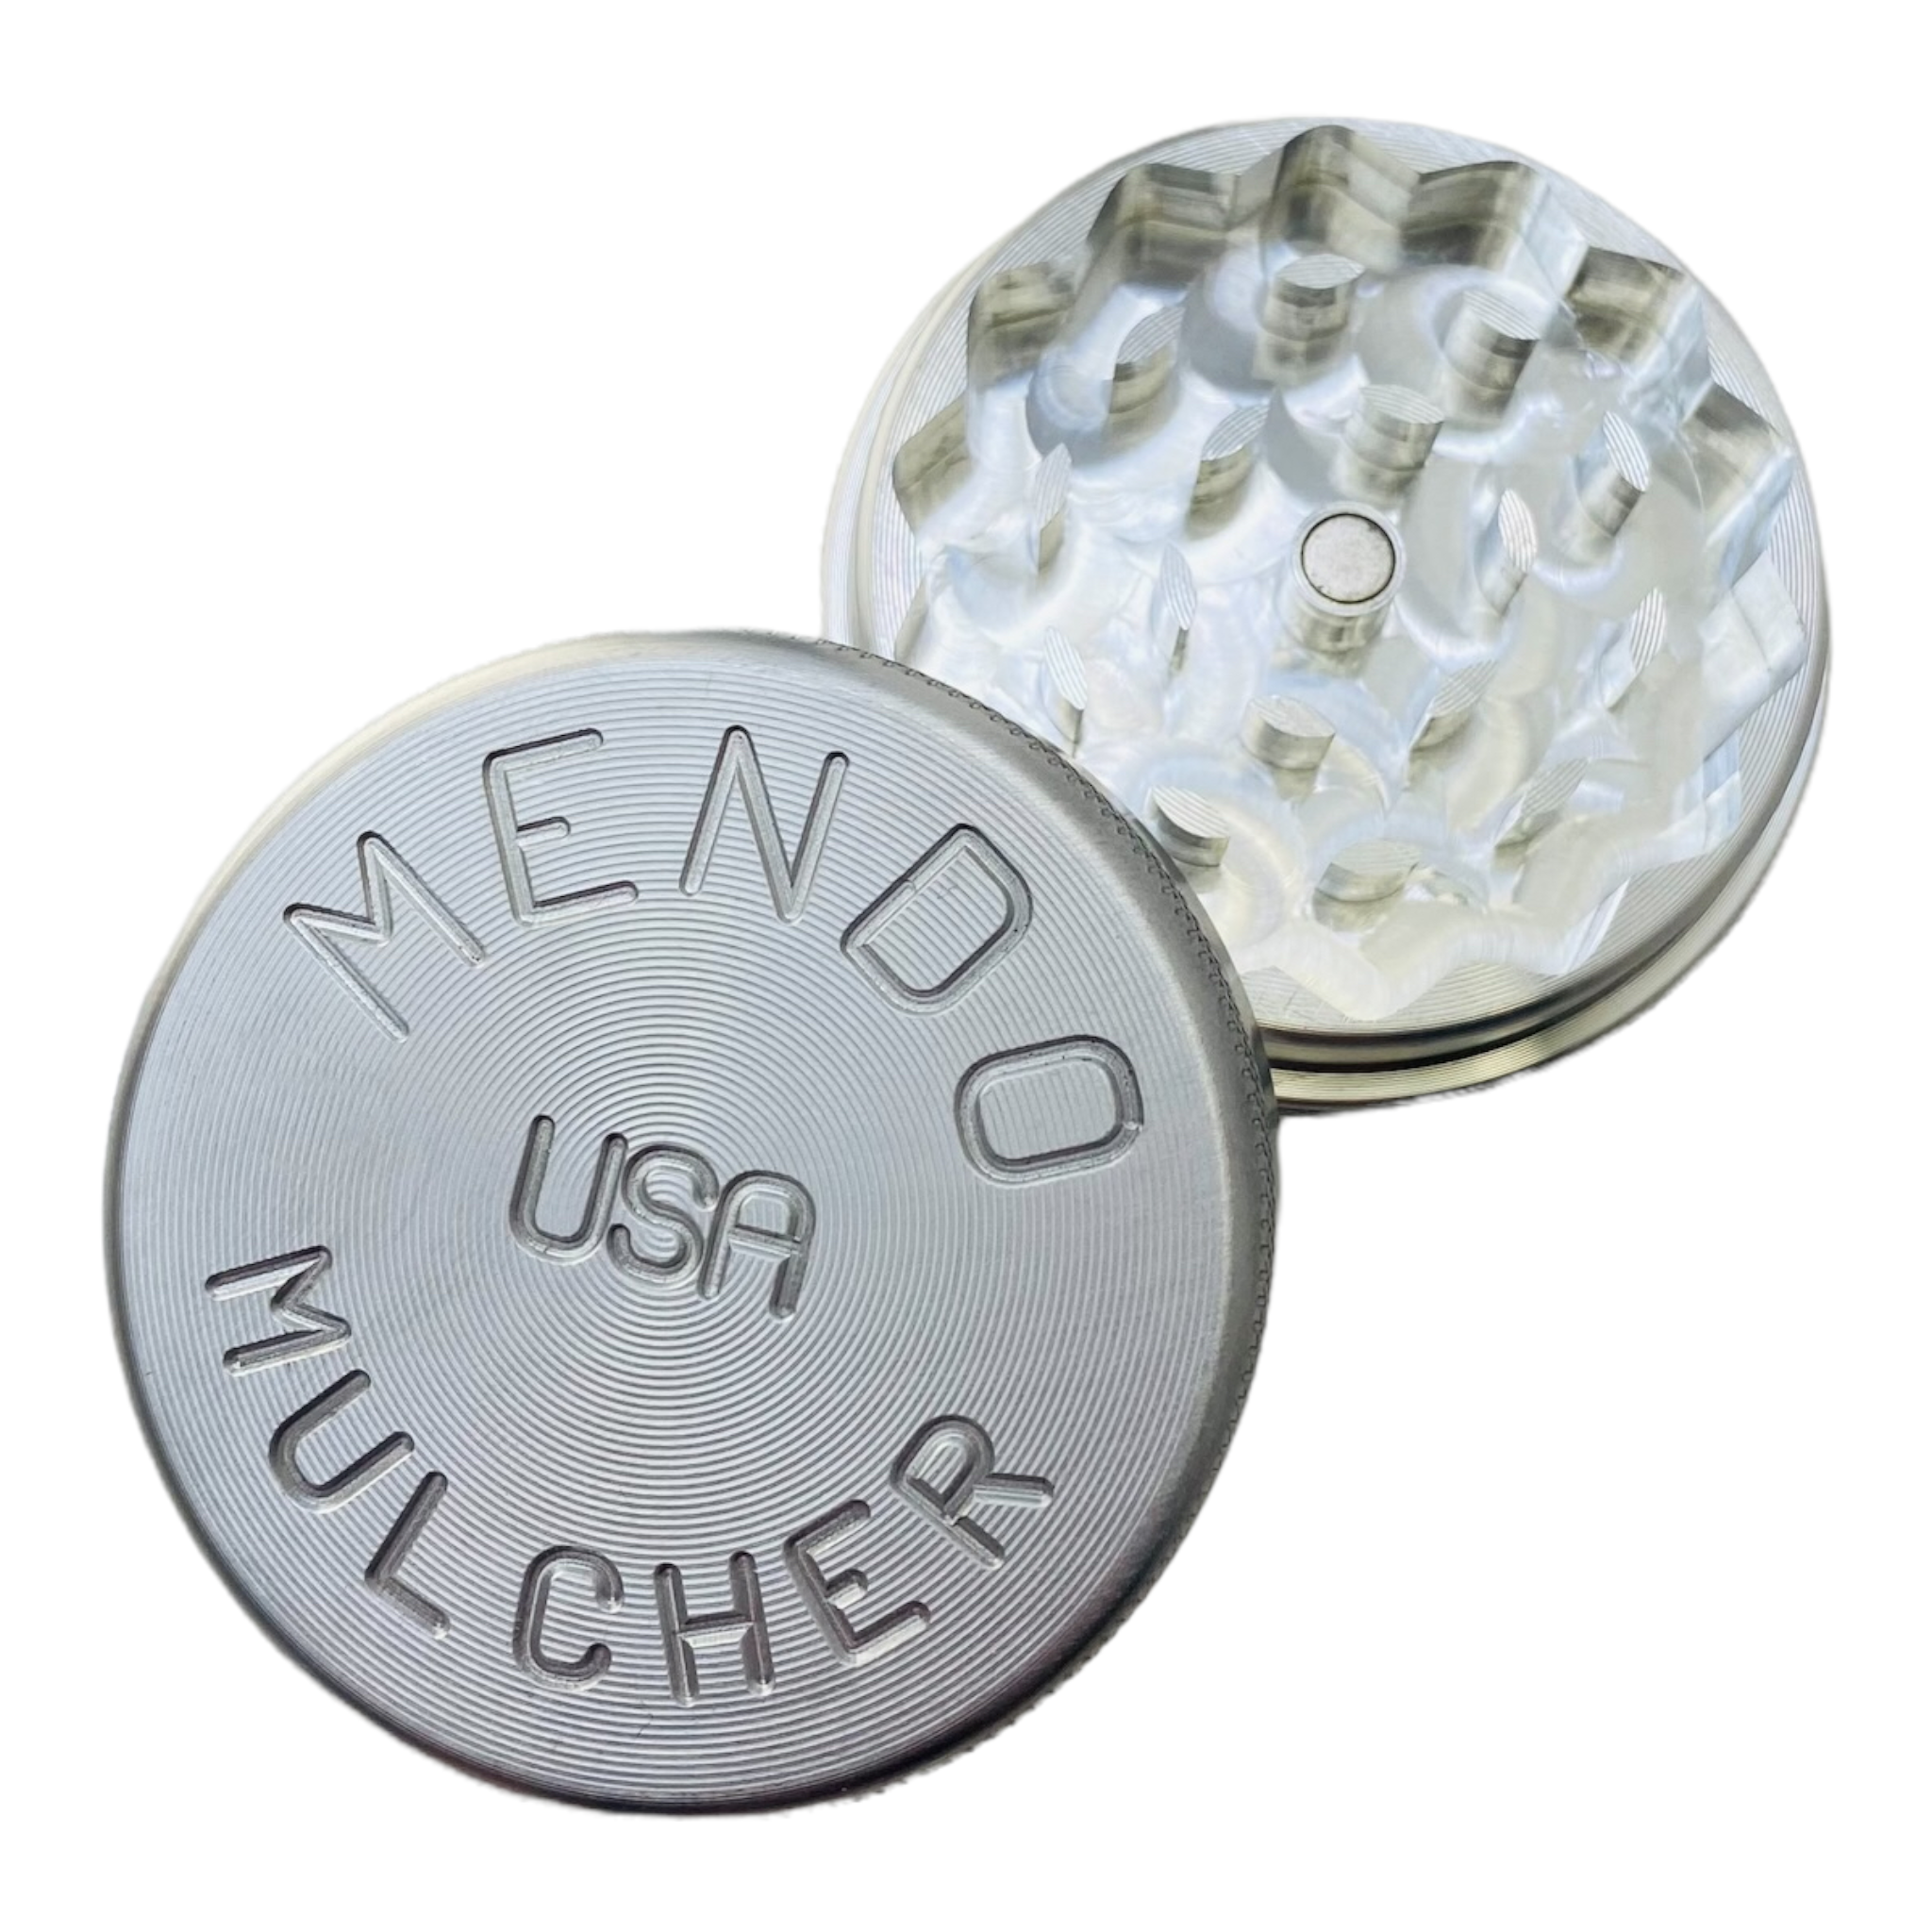 Mendo Mulcher - Medium Two Piece Mendo Mulcher Grinder